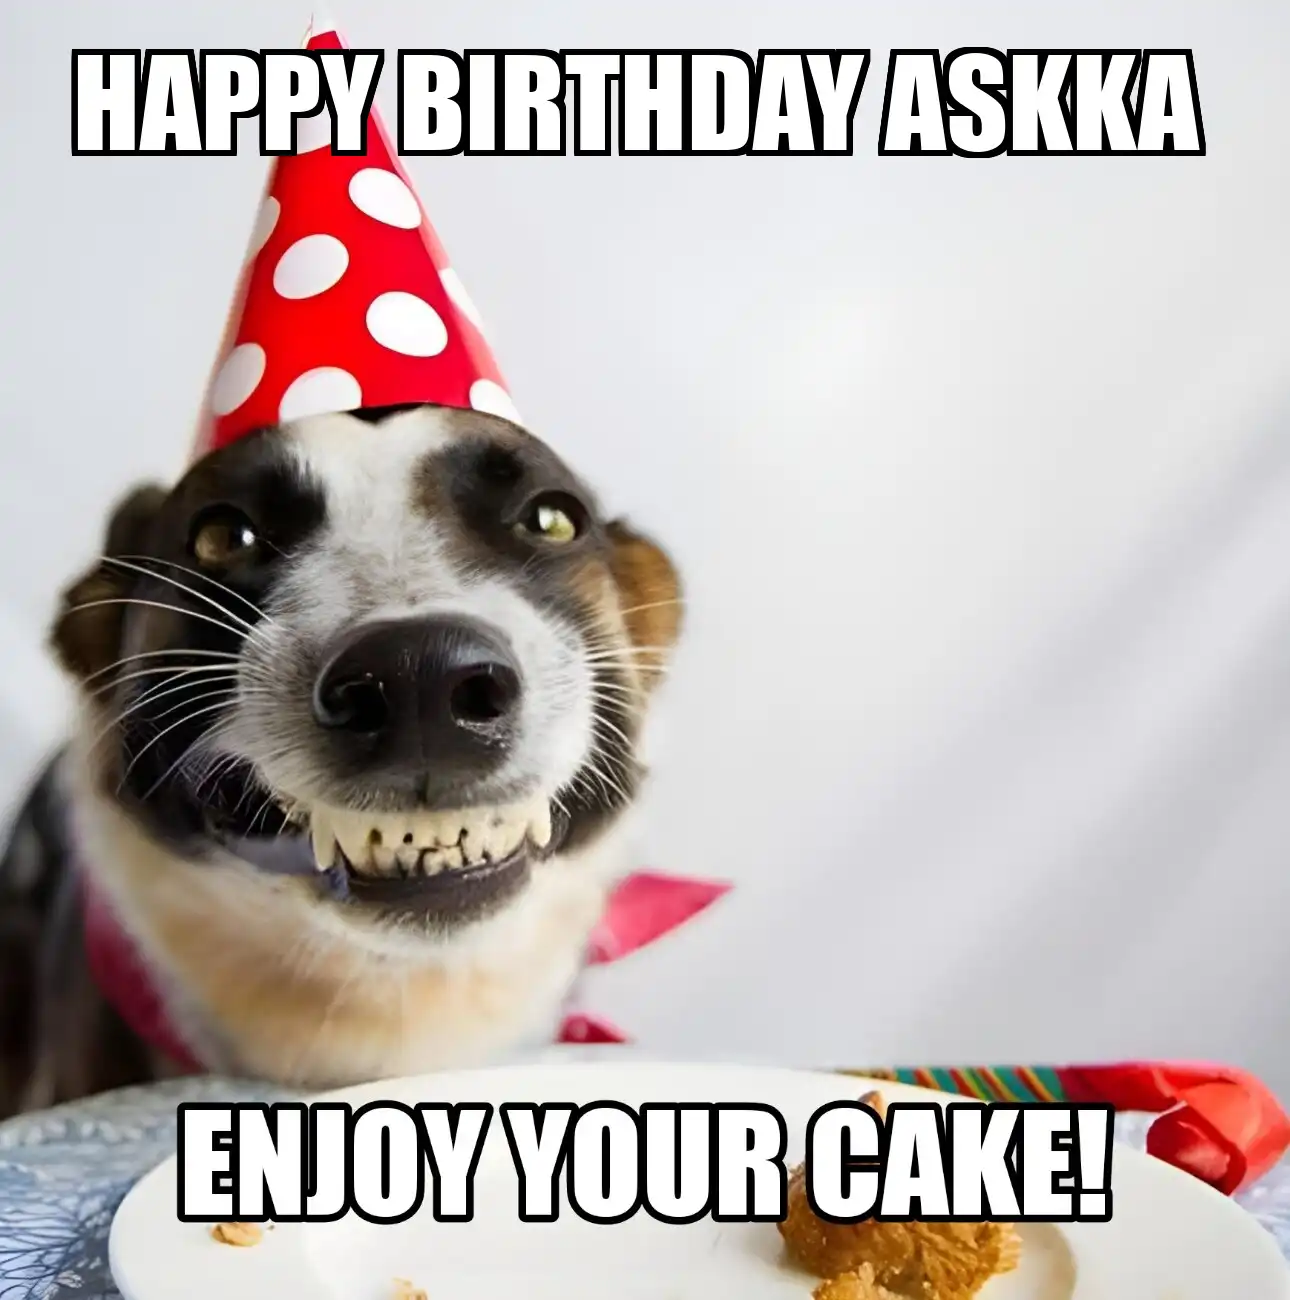 Happy Birthday Askka Enjoy Your Cake Dog Meme